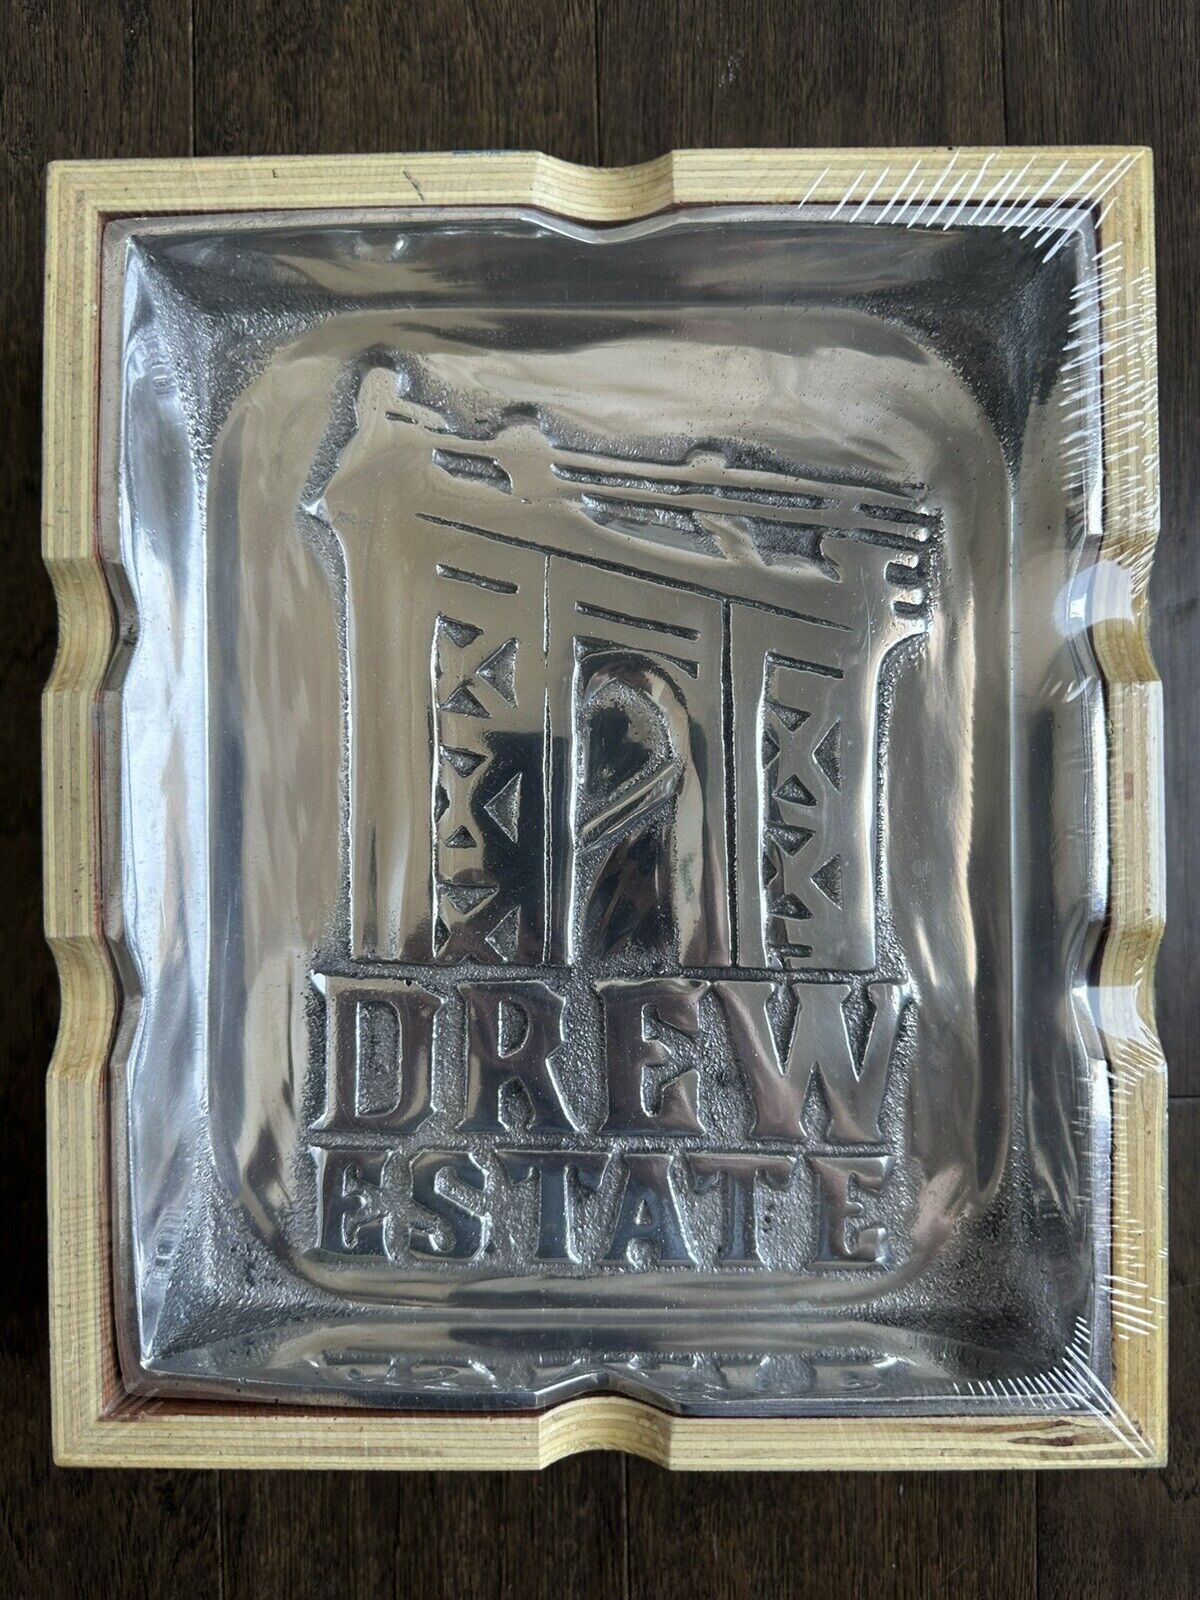 Drew Estates - Drew Diplomat Official Member Pewter Ashtray - Brand New in Box